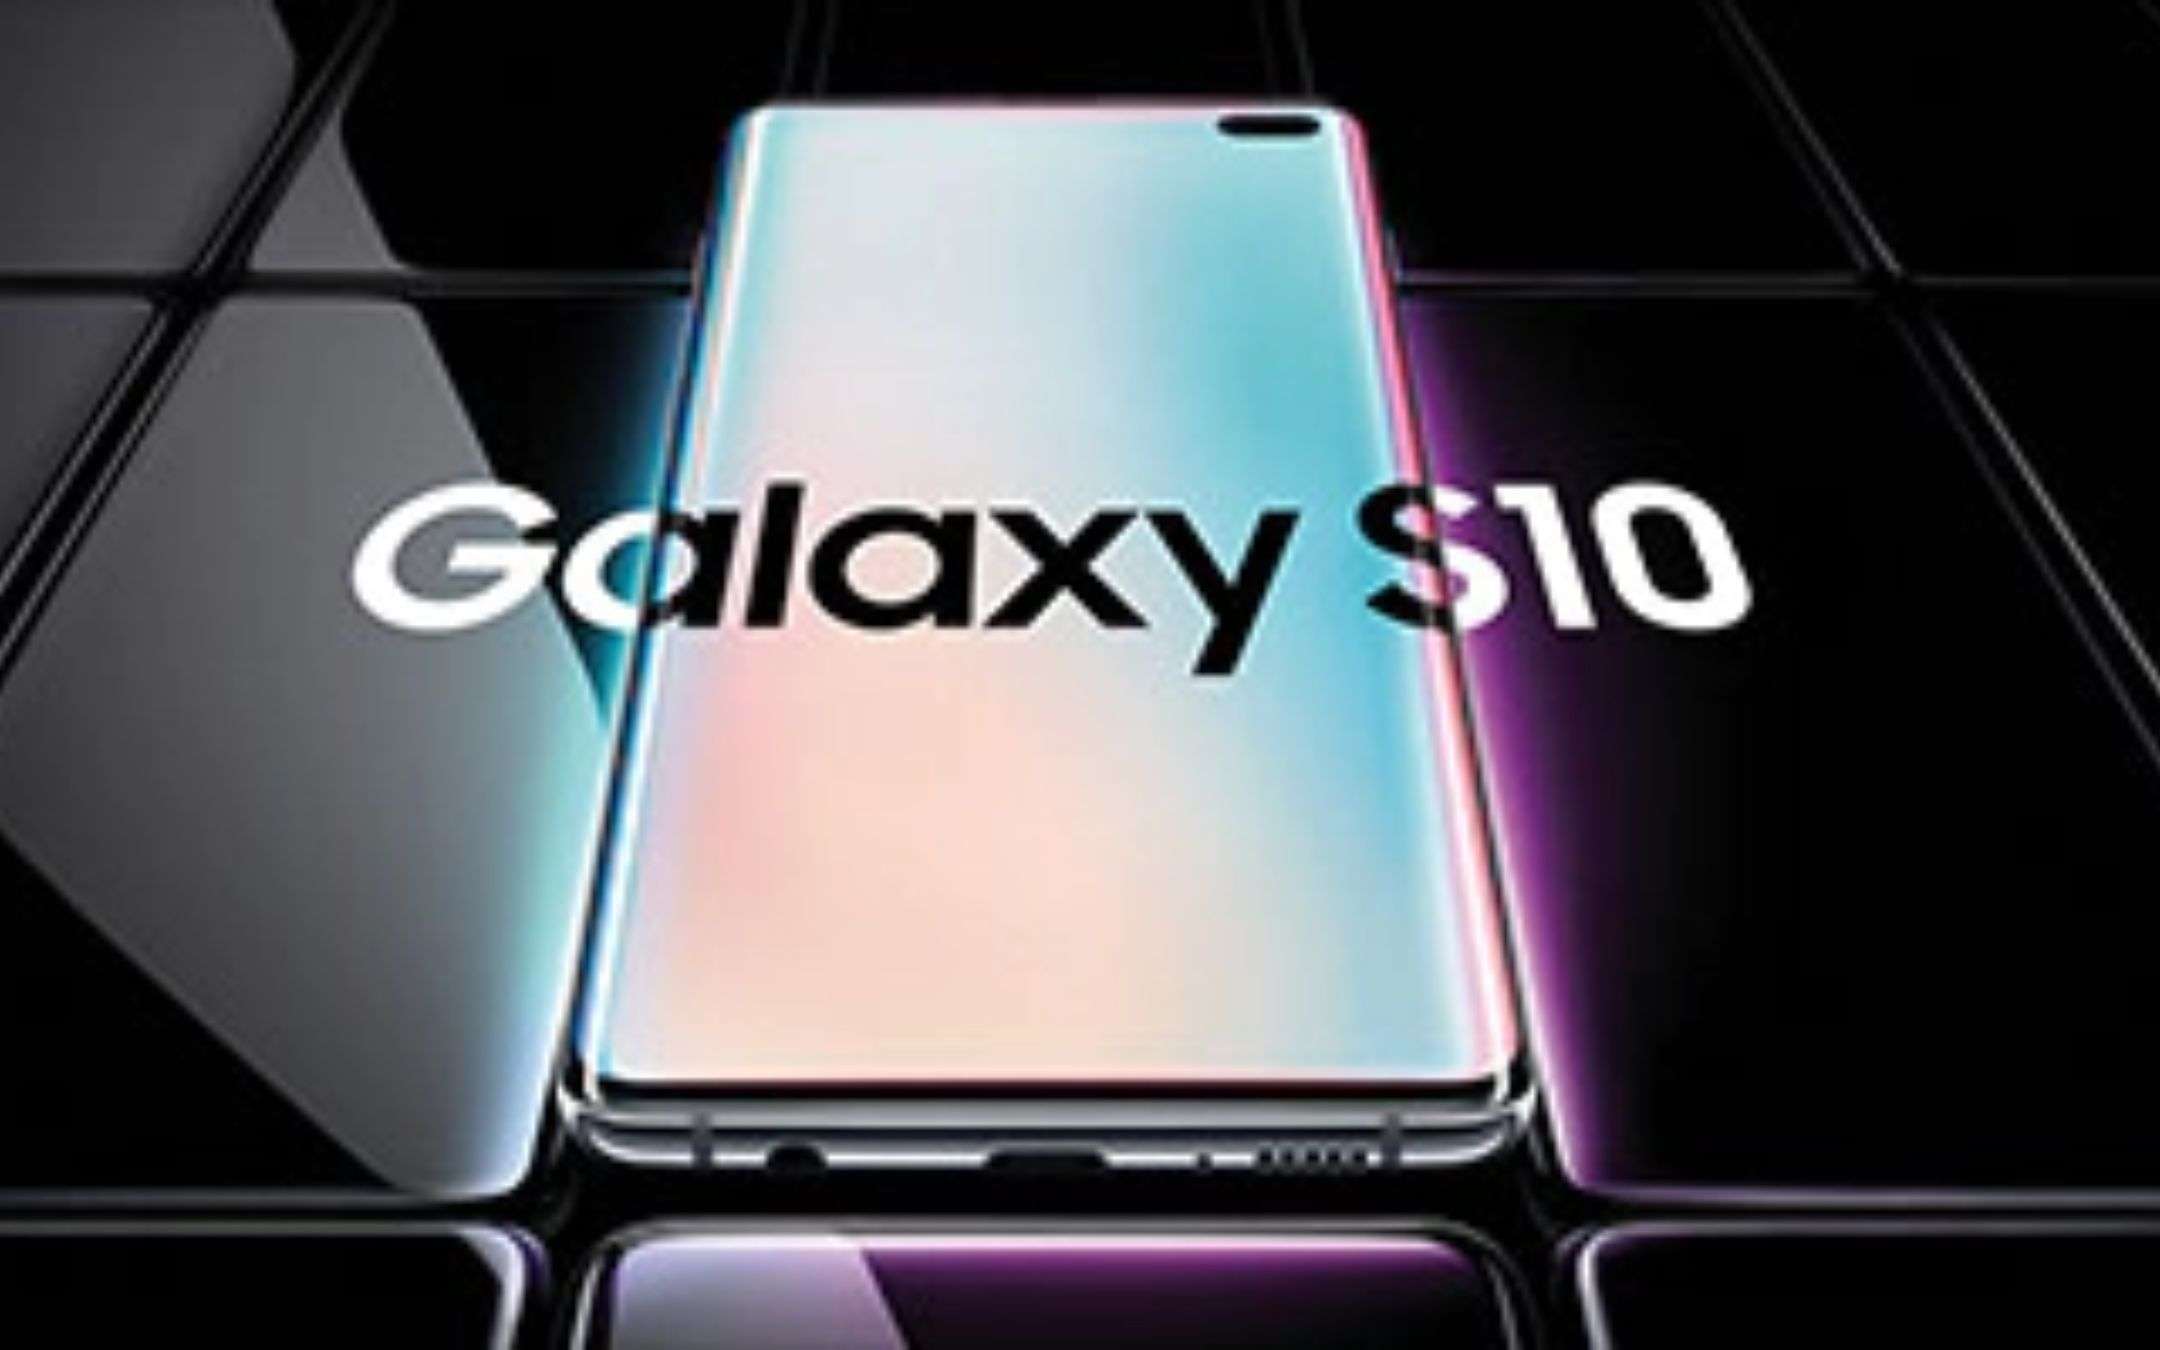 Samsung Galaxy S10 riceverà meno update: alcune soluzioni alternative